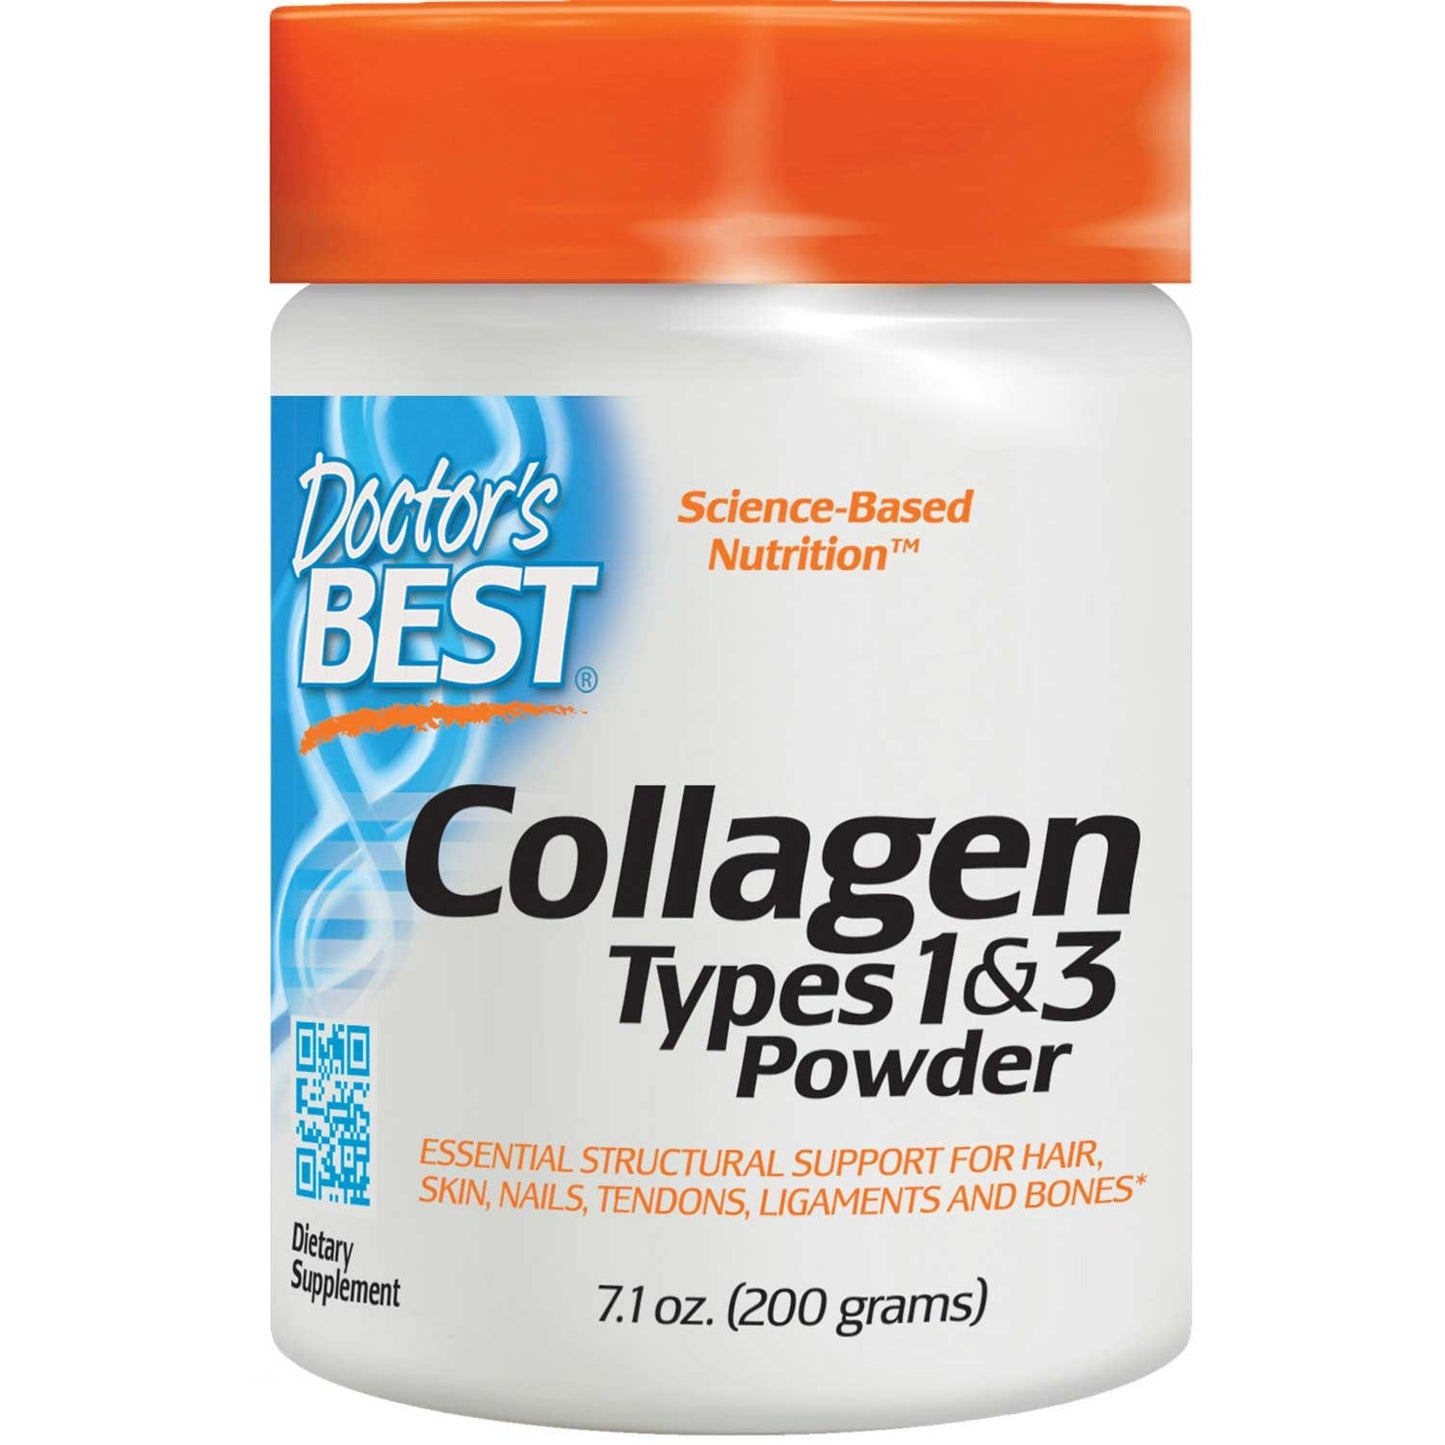 Doctor's Best Best Collagen Types 1 & 3 Powder, 200g-NaturesWisdom